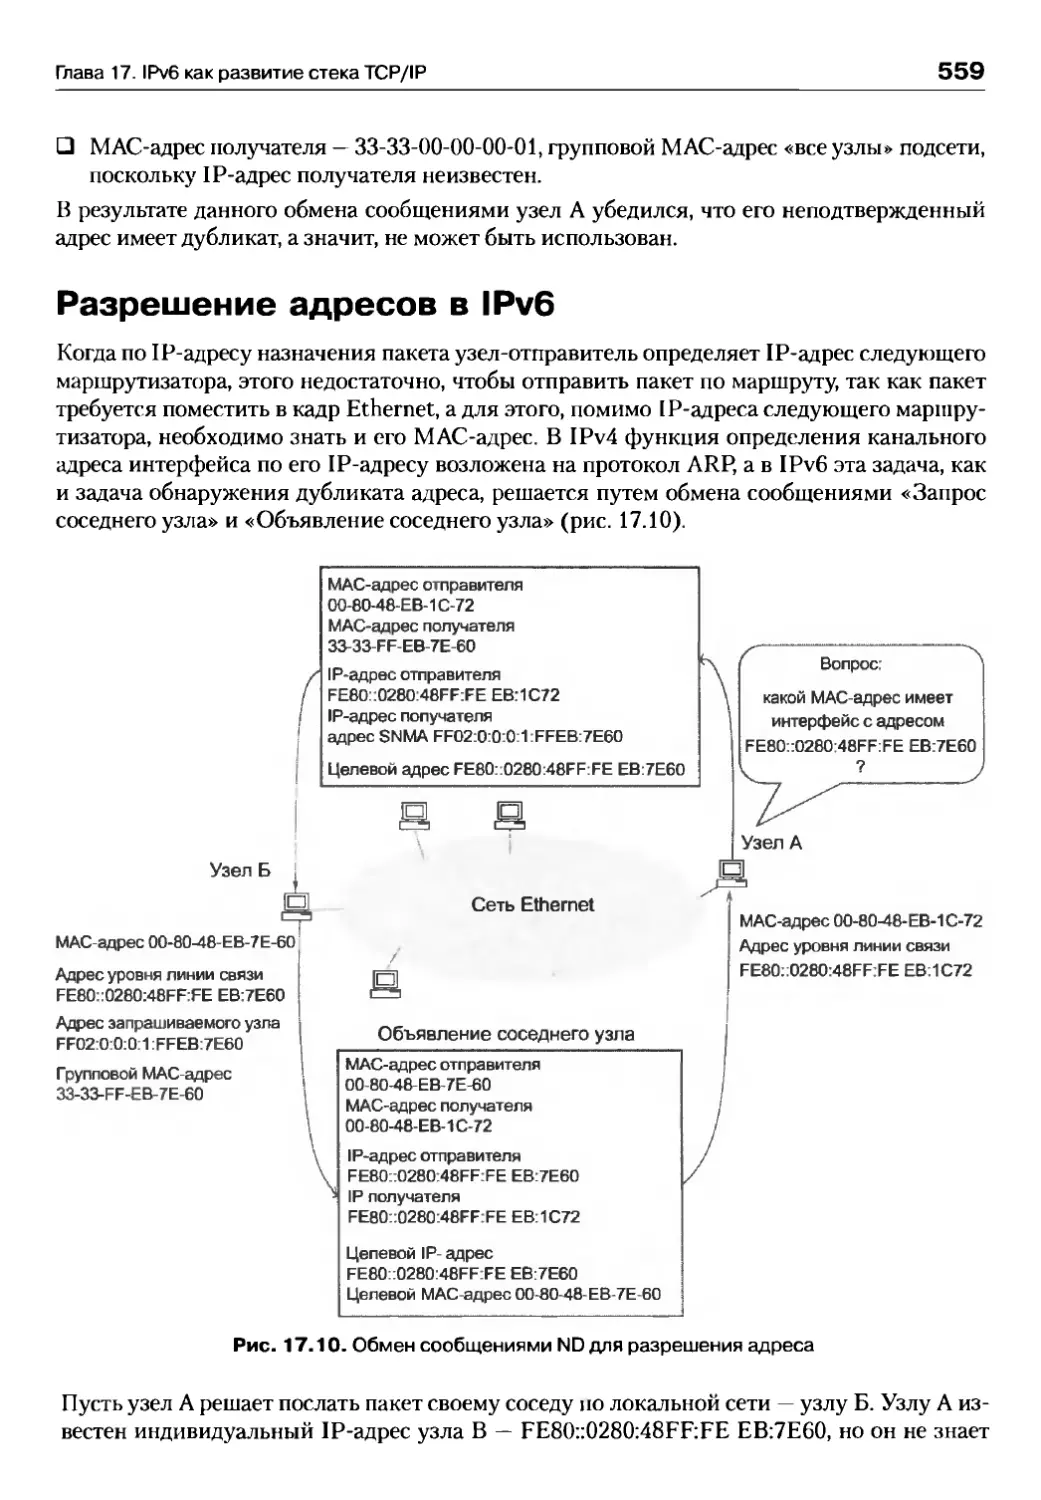 Разрешение адресов в IPv6